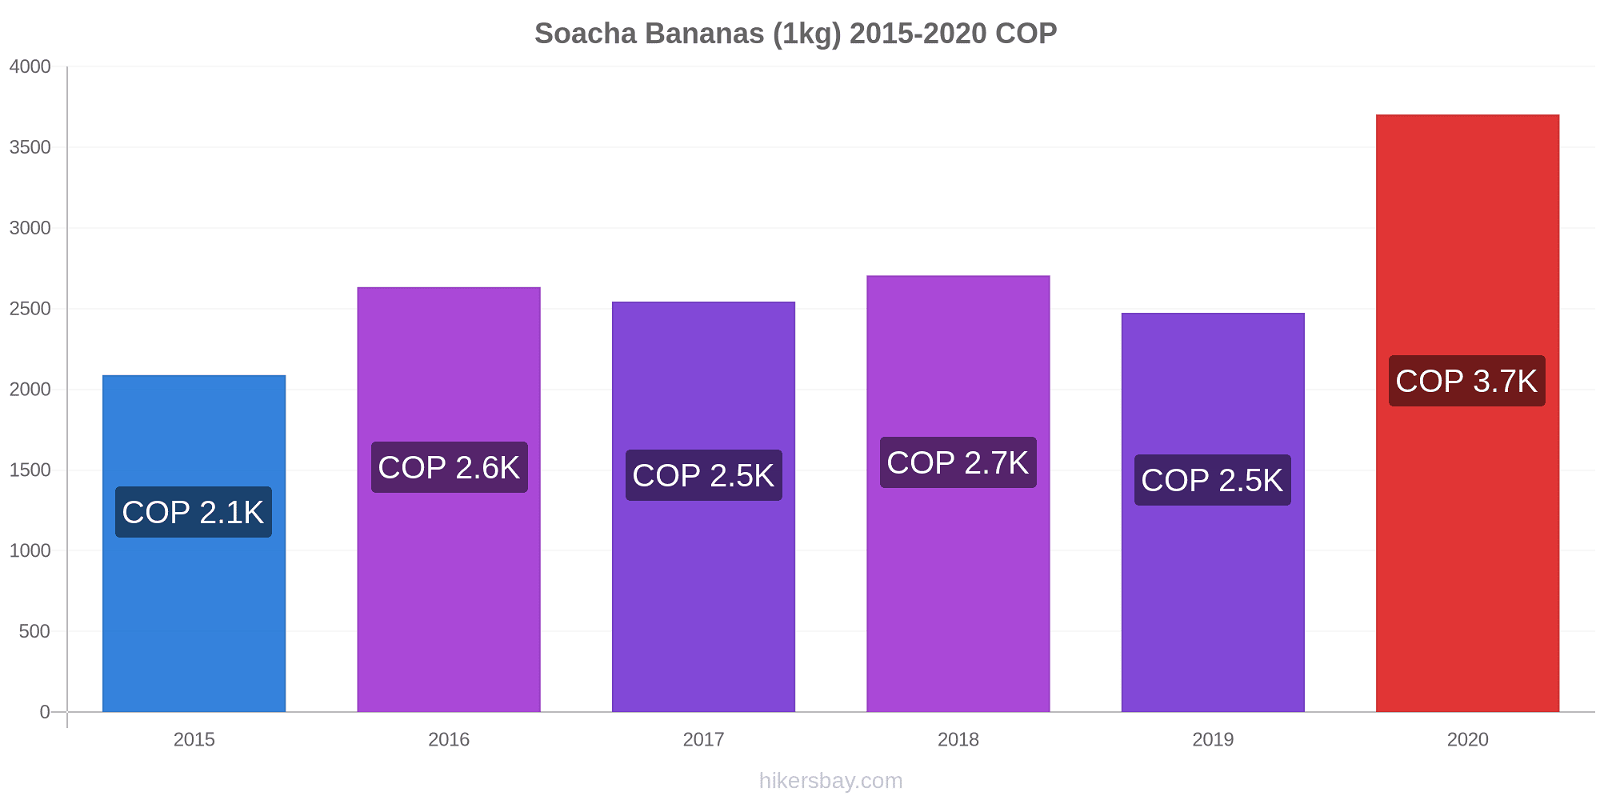 Soacha variação de preço Banana (1kg) hikersbay.com